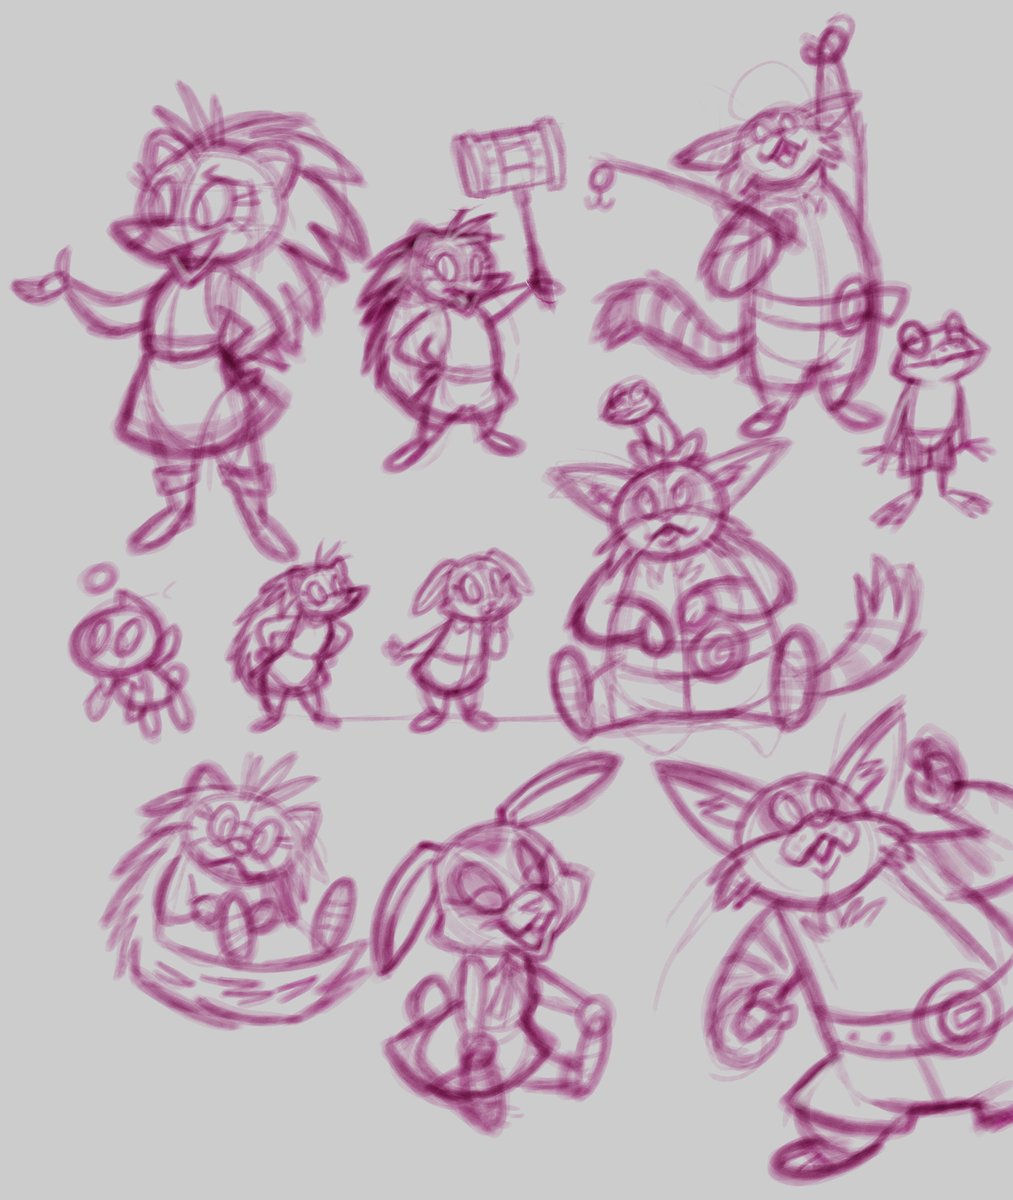 Team Rose sketches 🦔🐰🐱 #SonicTheHedgehog